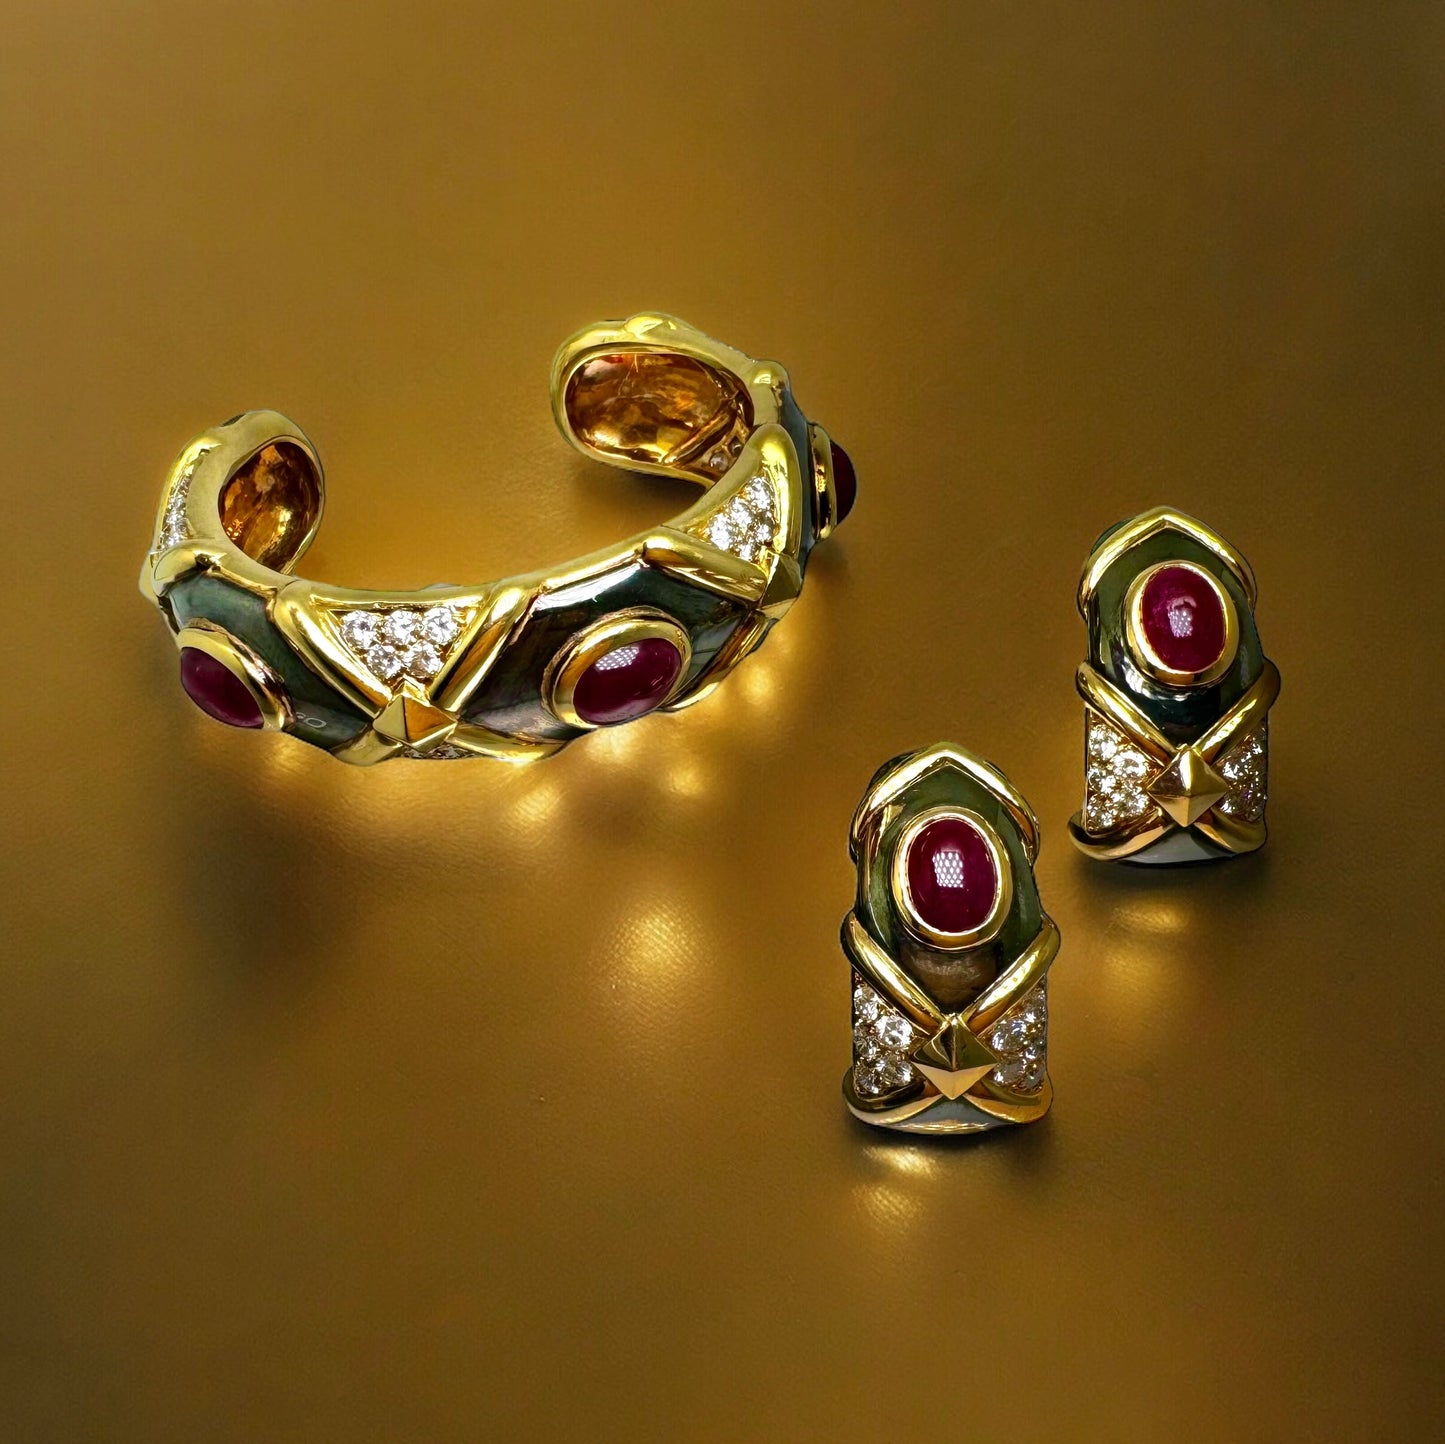 Boucles d’oreille vintage en or noirci et jaune ornée de rubis et diamants.